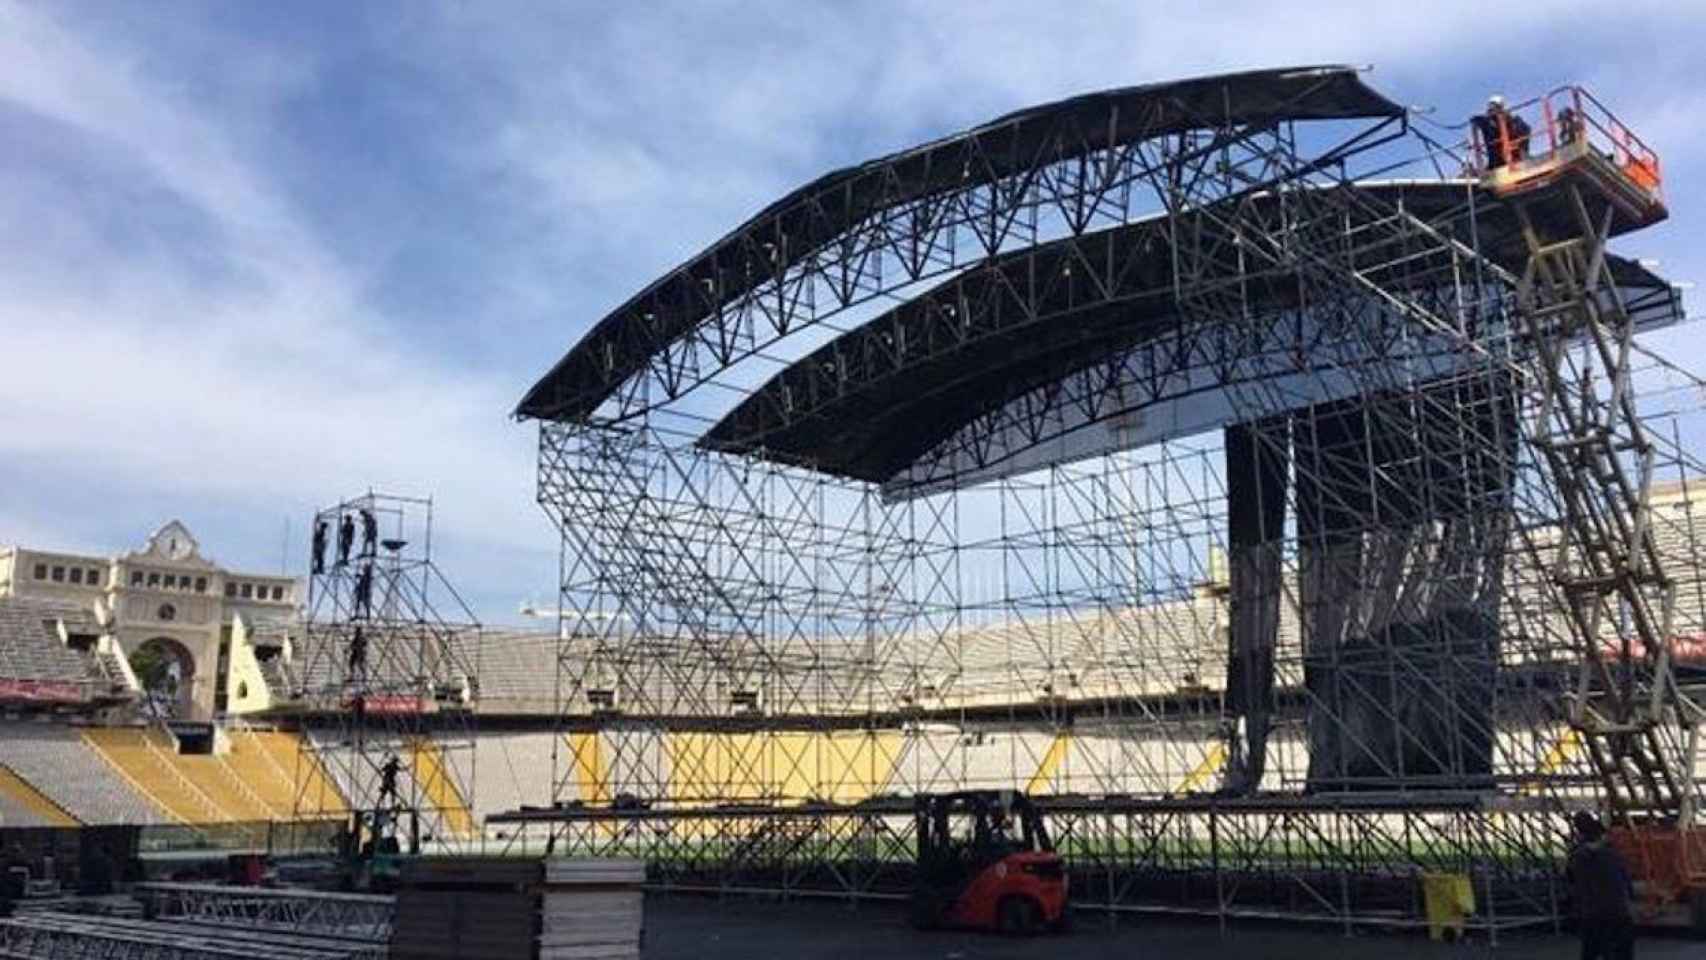 Preparativos de un concierto en el Estadi Olímpic de Barcelona / B:SM